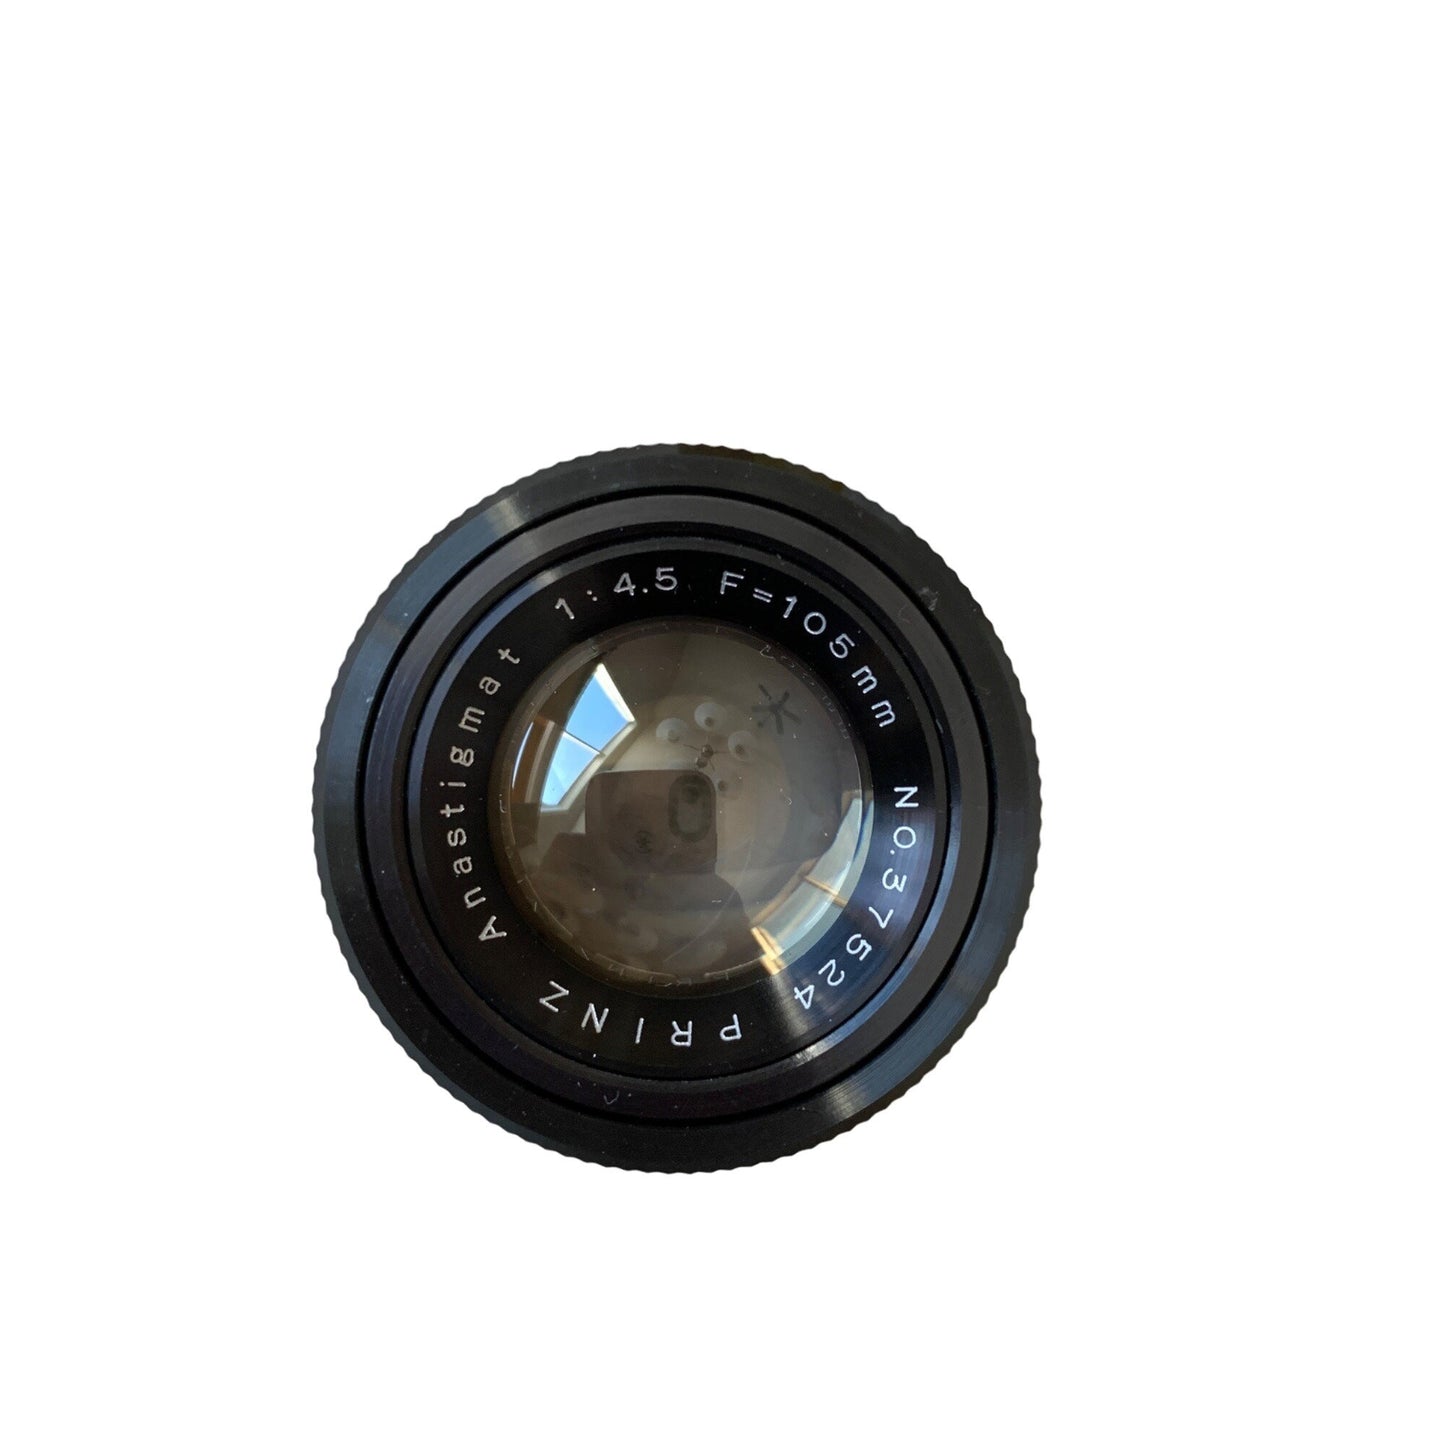 Prinz Anastigmat 1:4.5 F=105mm Japan Lens In Box